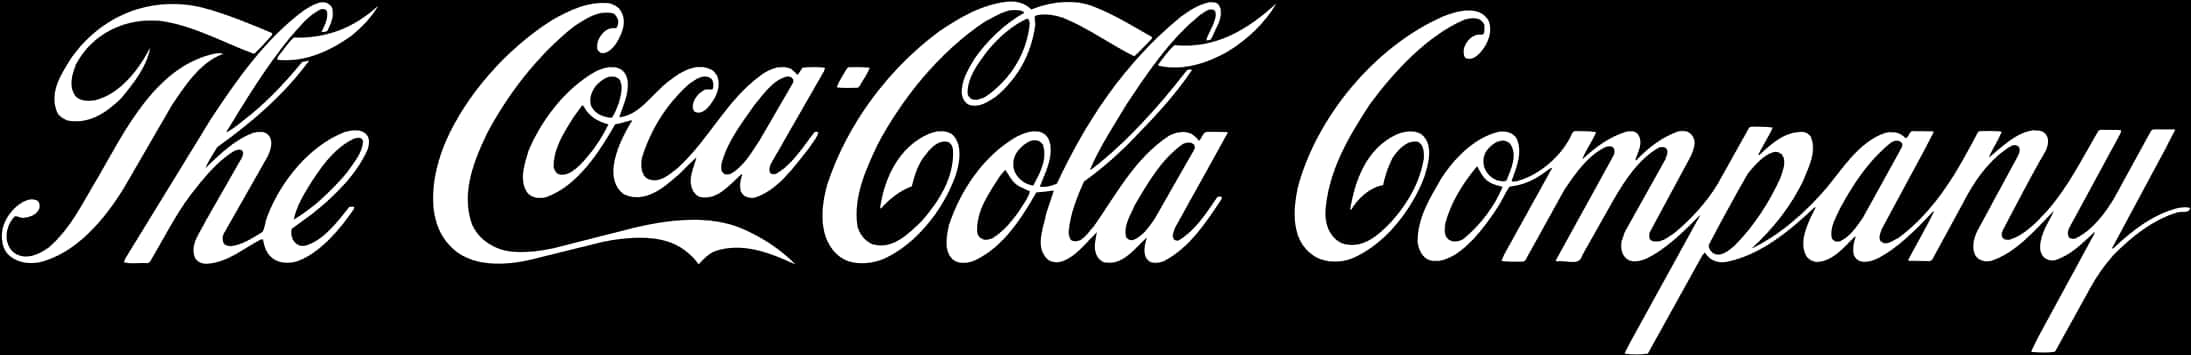 Coca Cola Logo Png